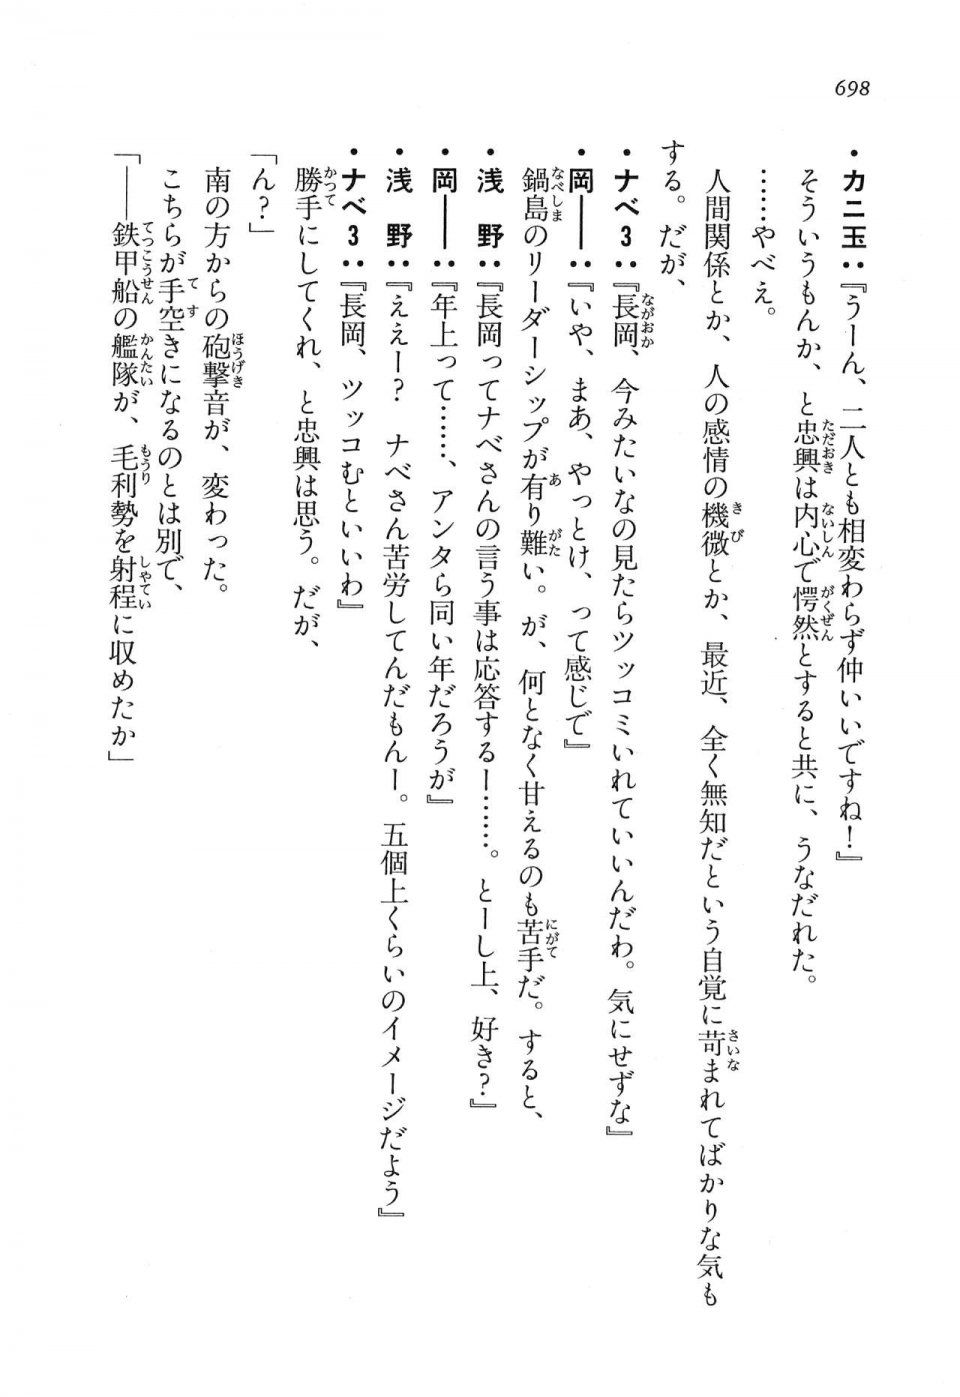 Kyoukai Senjou no Horizon LN Vol 16(7A) - Photo #698